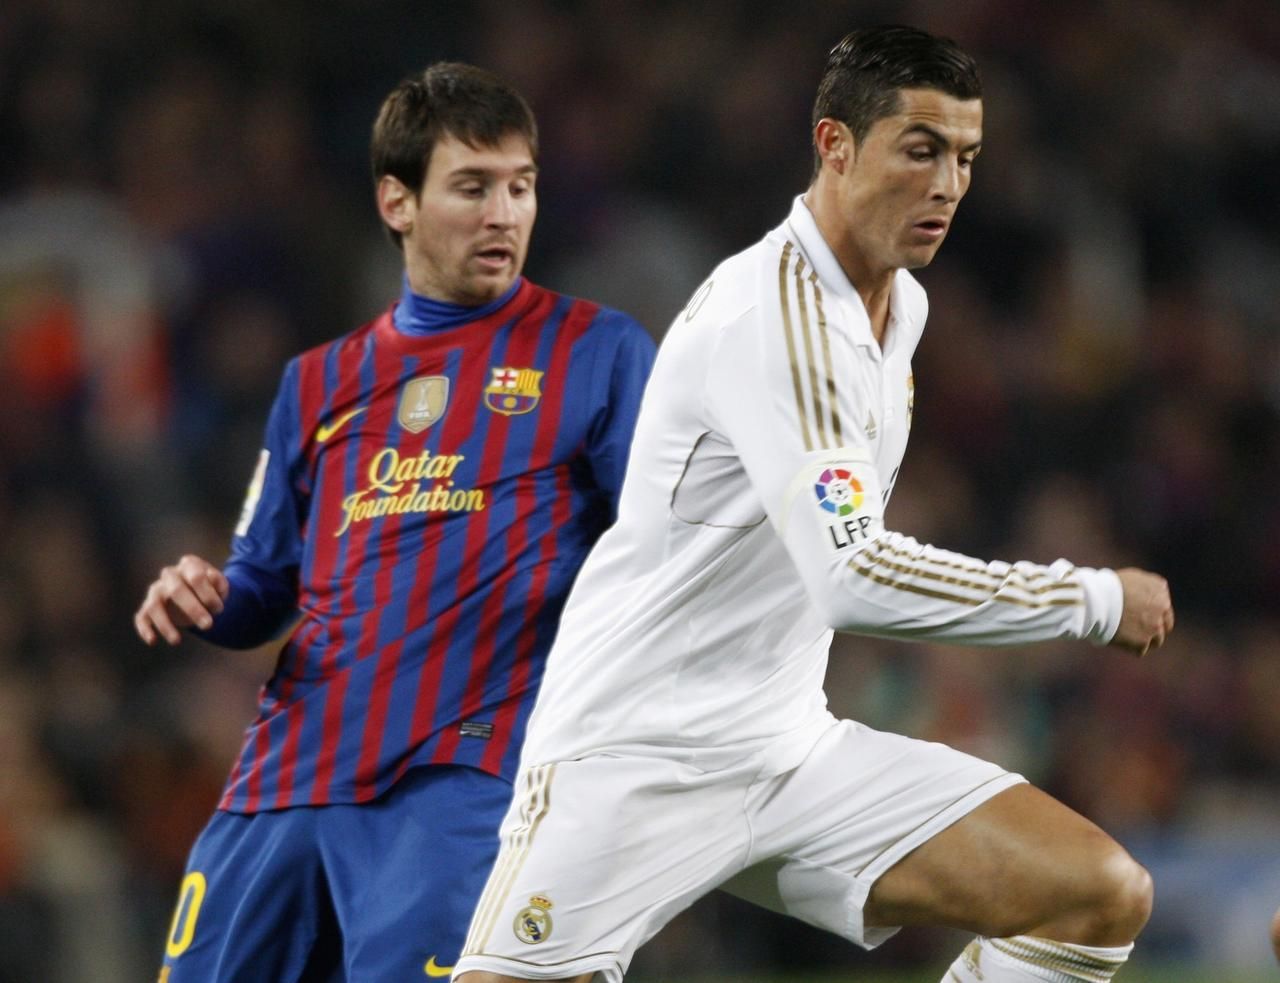 Španělský pohár: Barcelona - Real Madrid (Messi, Ronaldo)